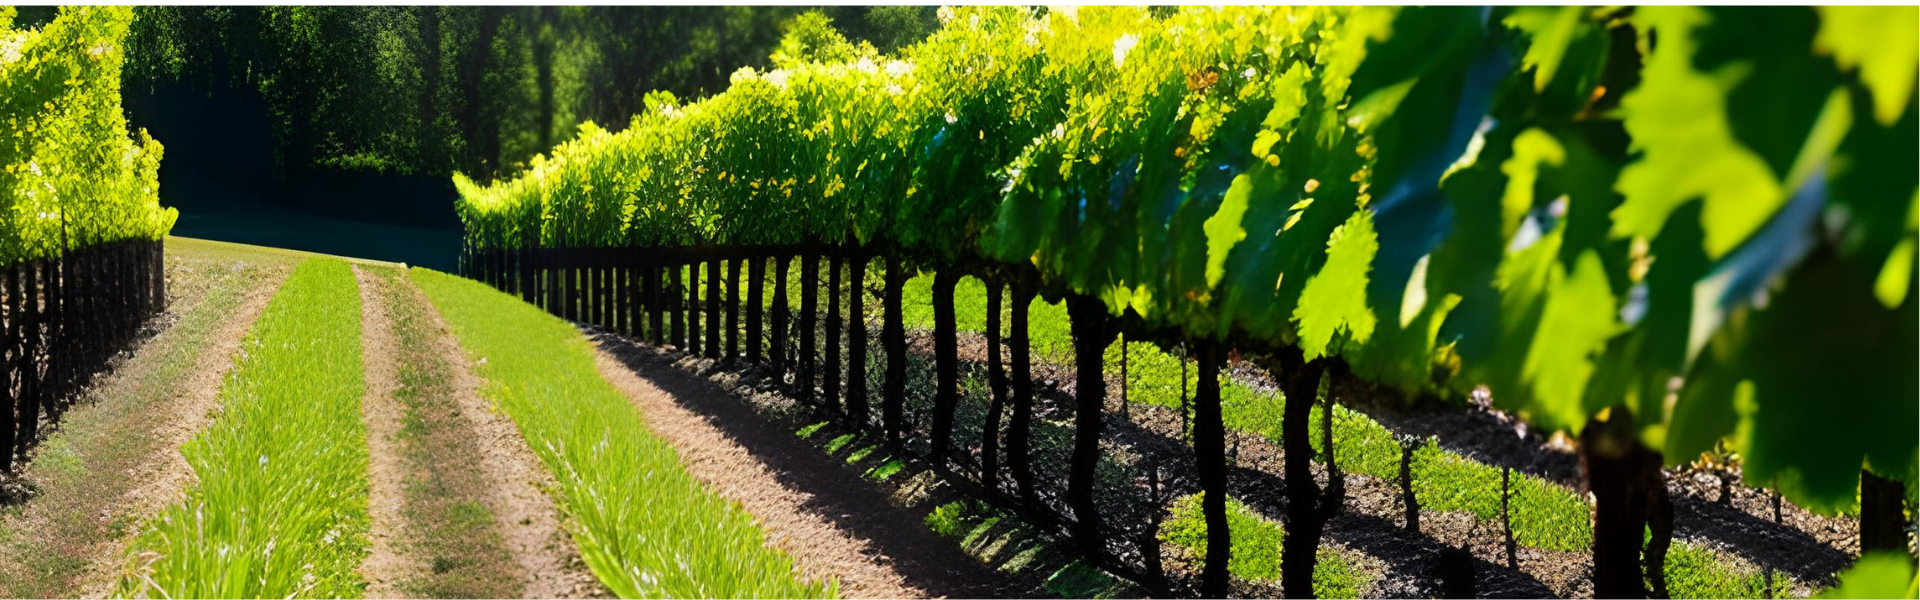 Les vins bio : un choix écologique et gustatif à découvrir aux Palais des Vignobles